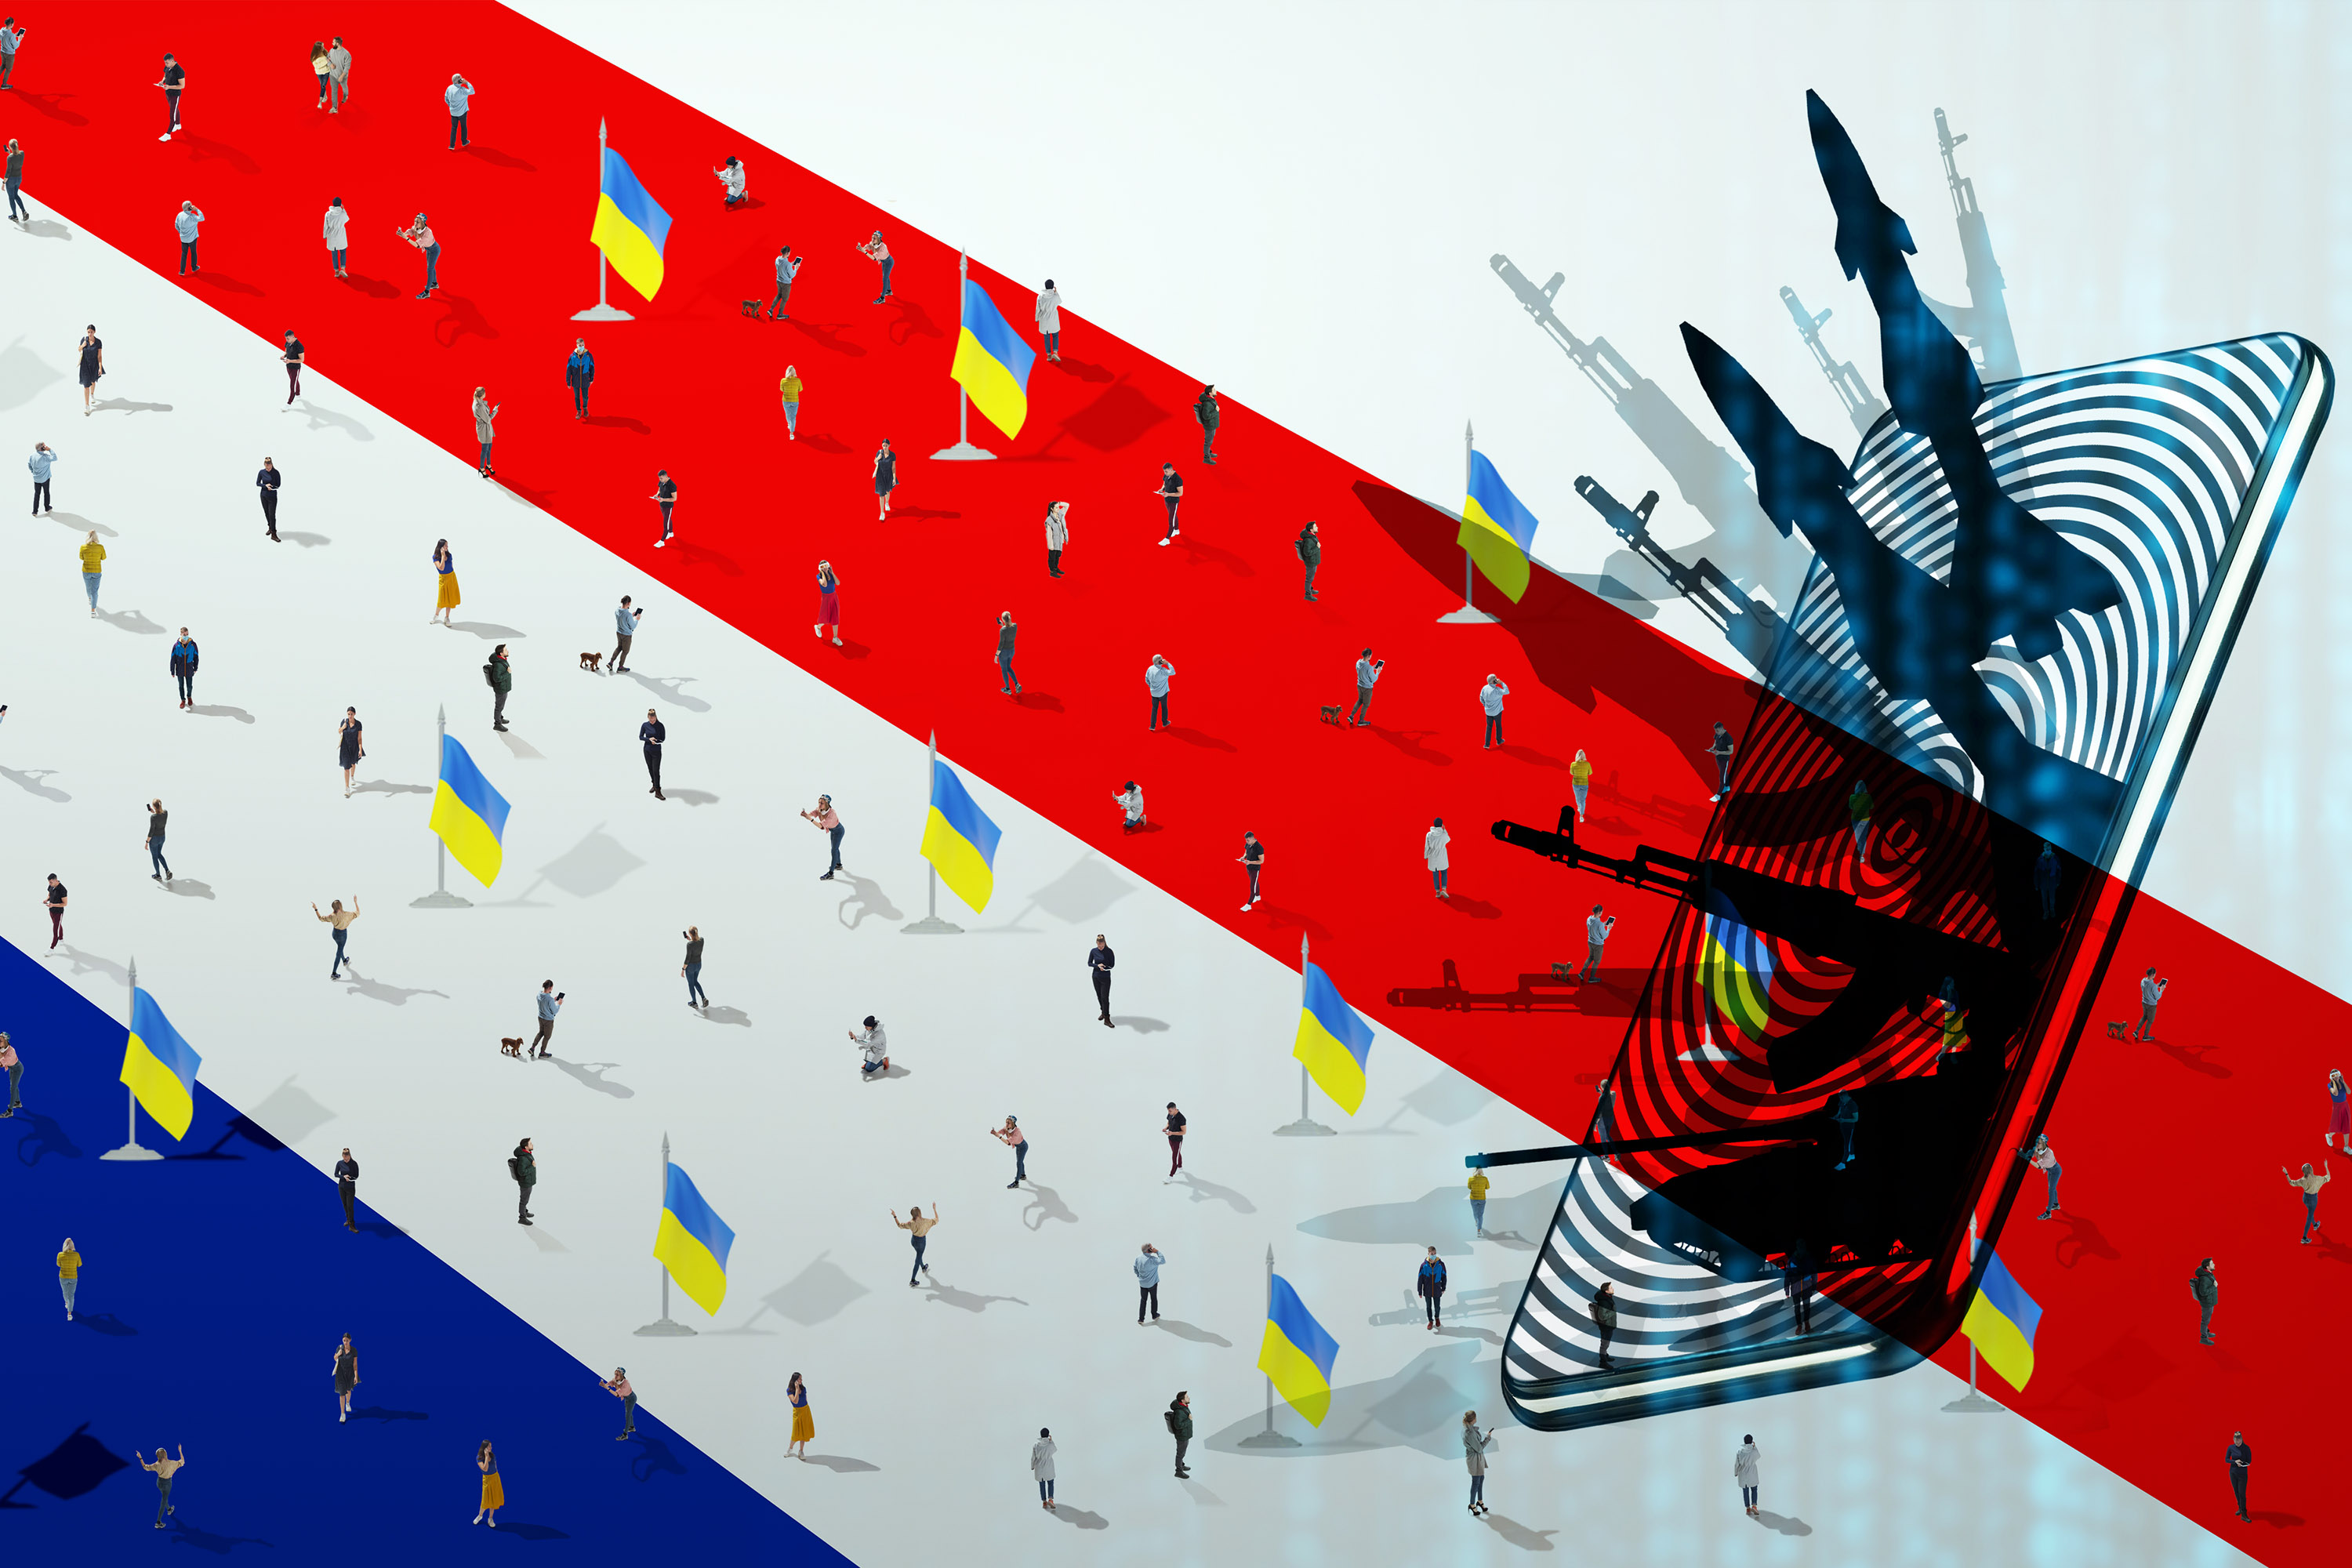 Guerre en Ukraine : entre cyber-propagande Russe et hacktivisme... de nouvelles formes d'attaques émergent